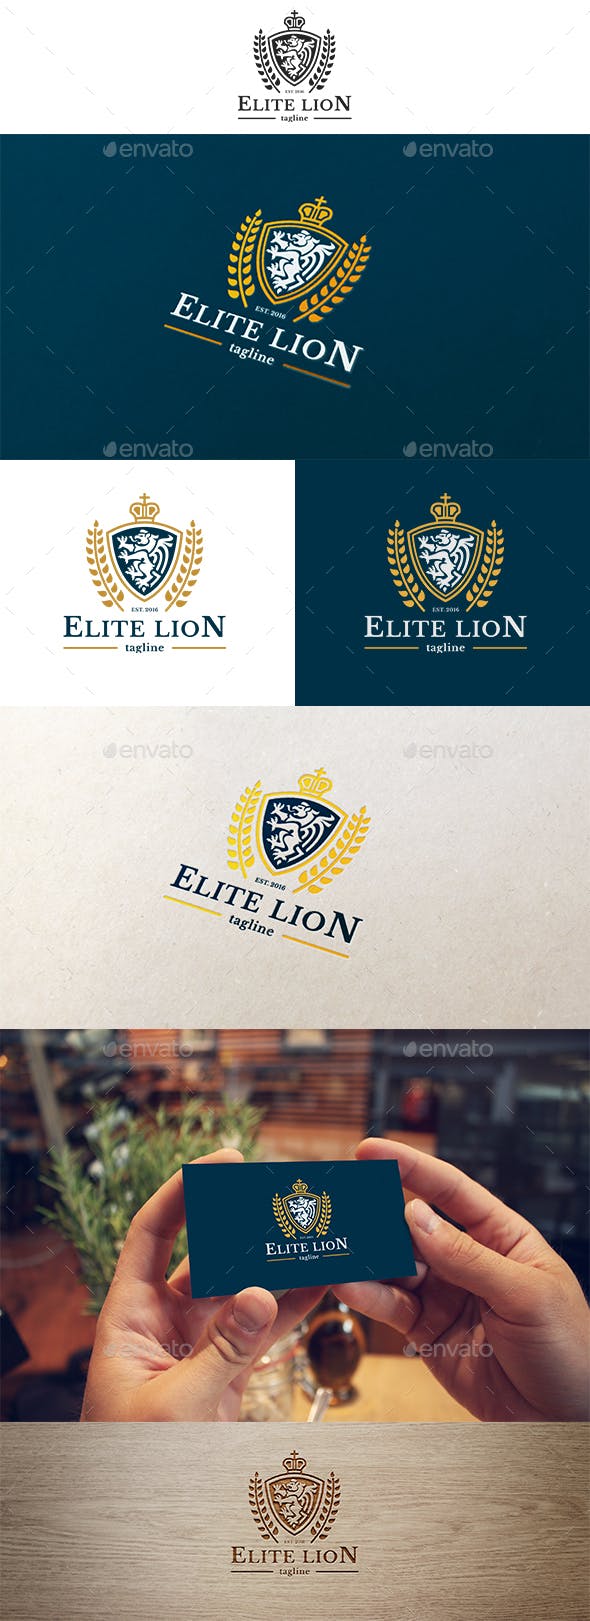 Elite Lion Logo - Elite Lion Logo